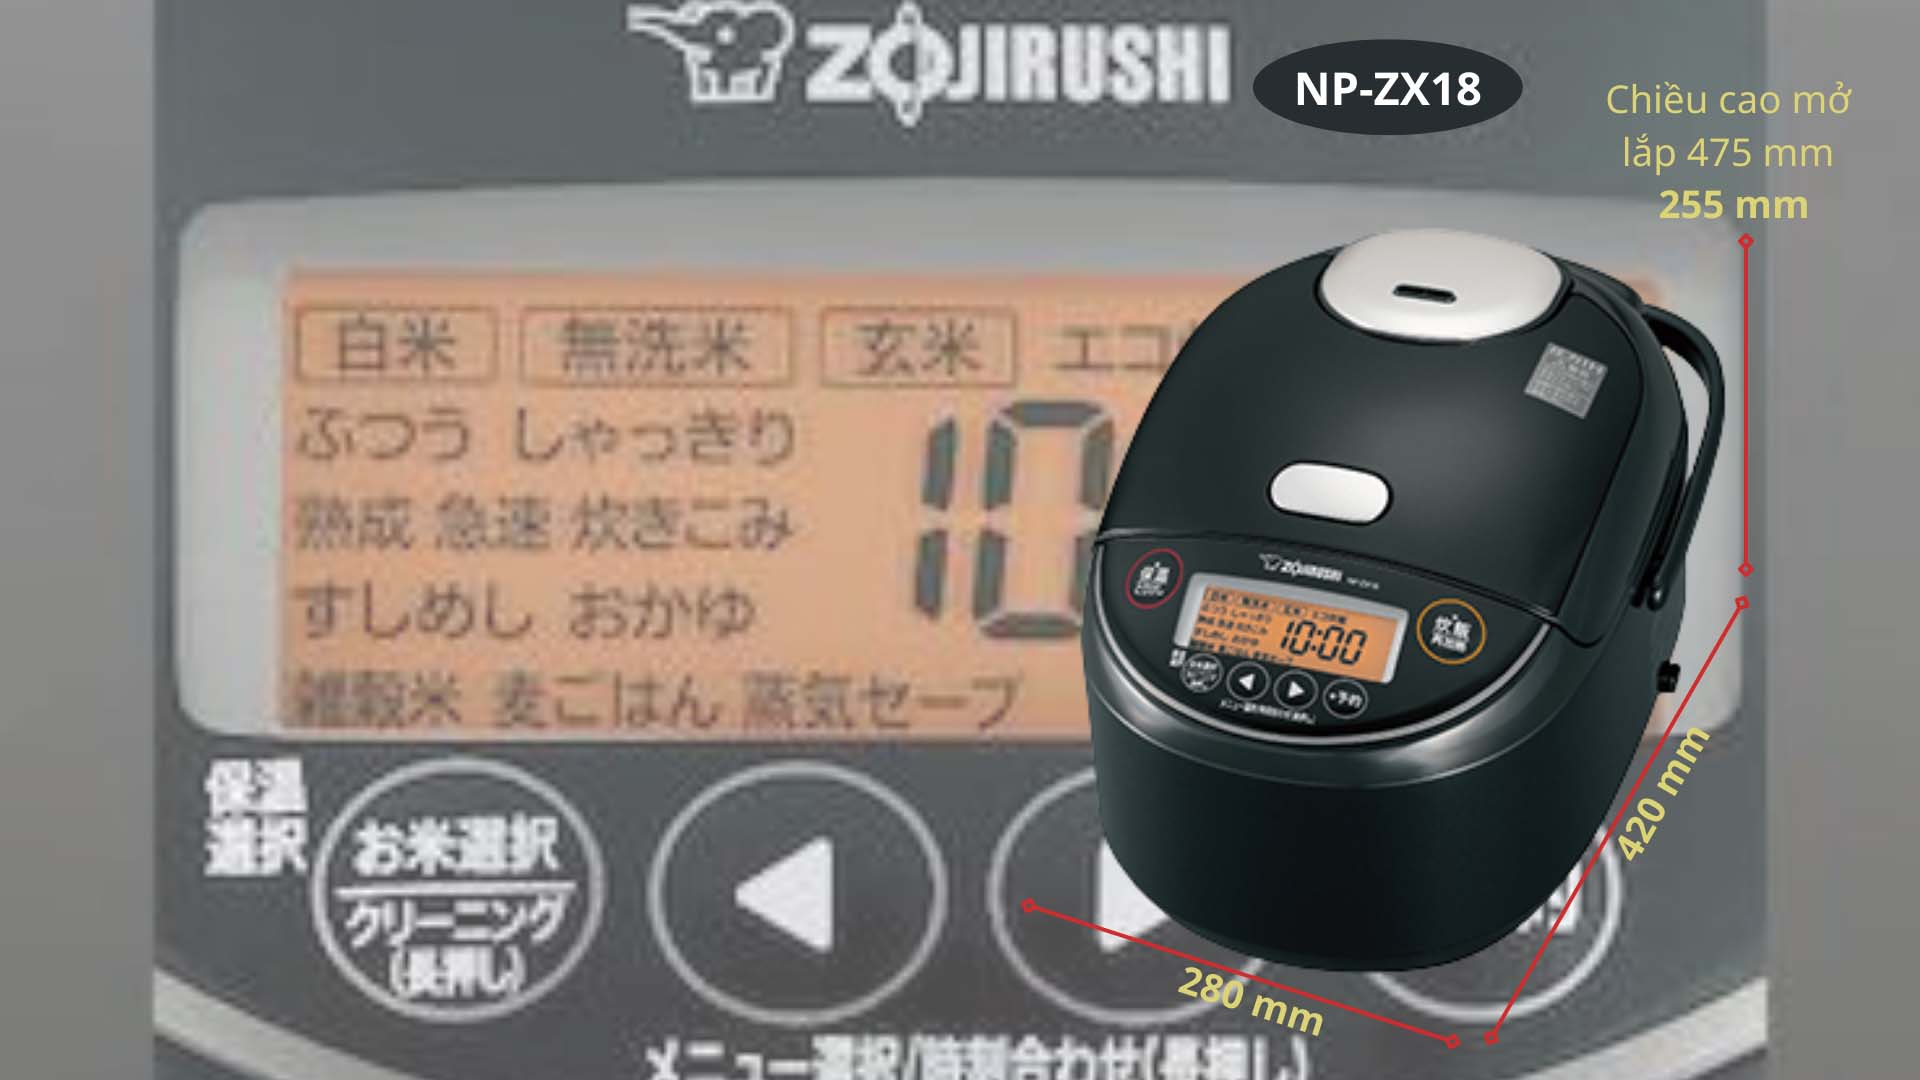 Nồi cơm điện Zojirushi NP-ZX18